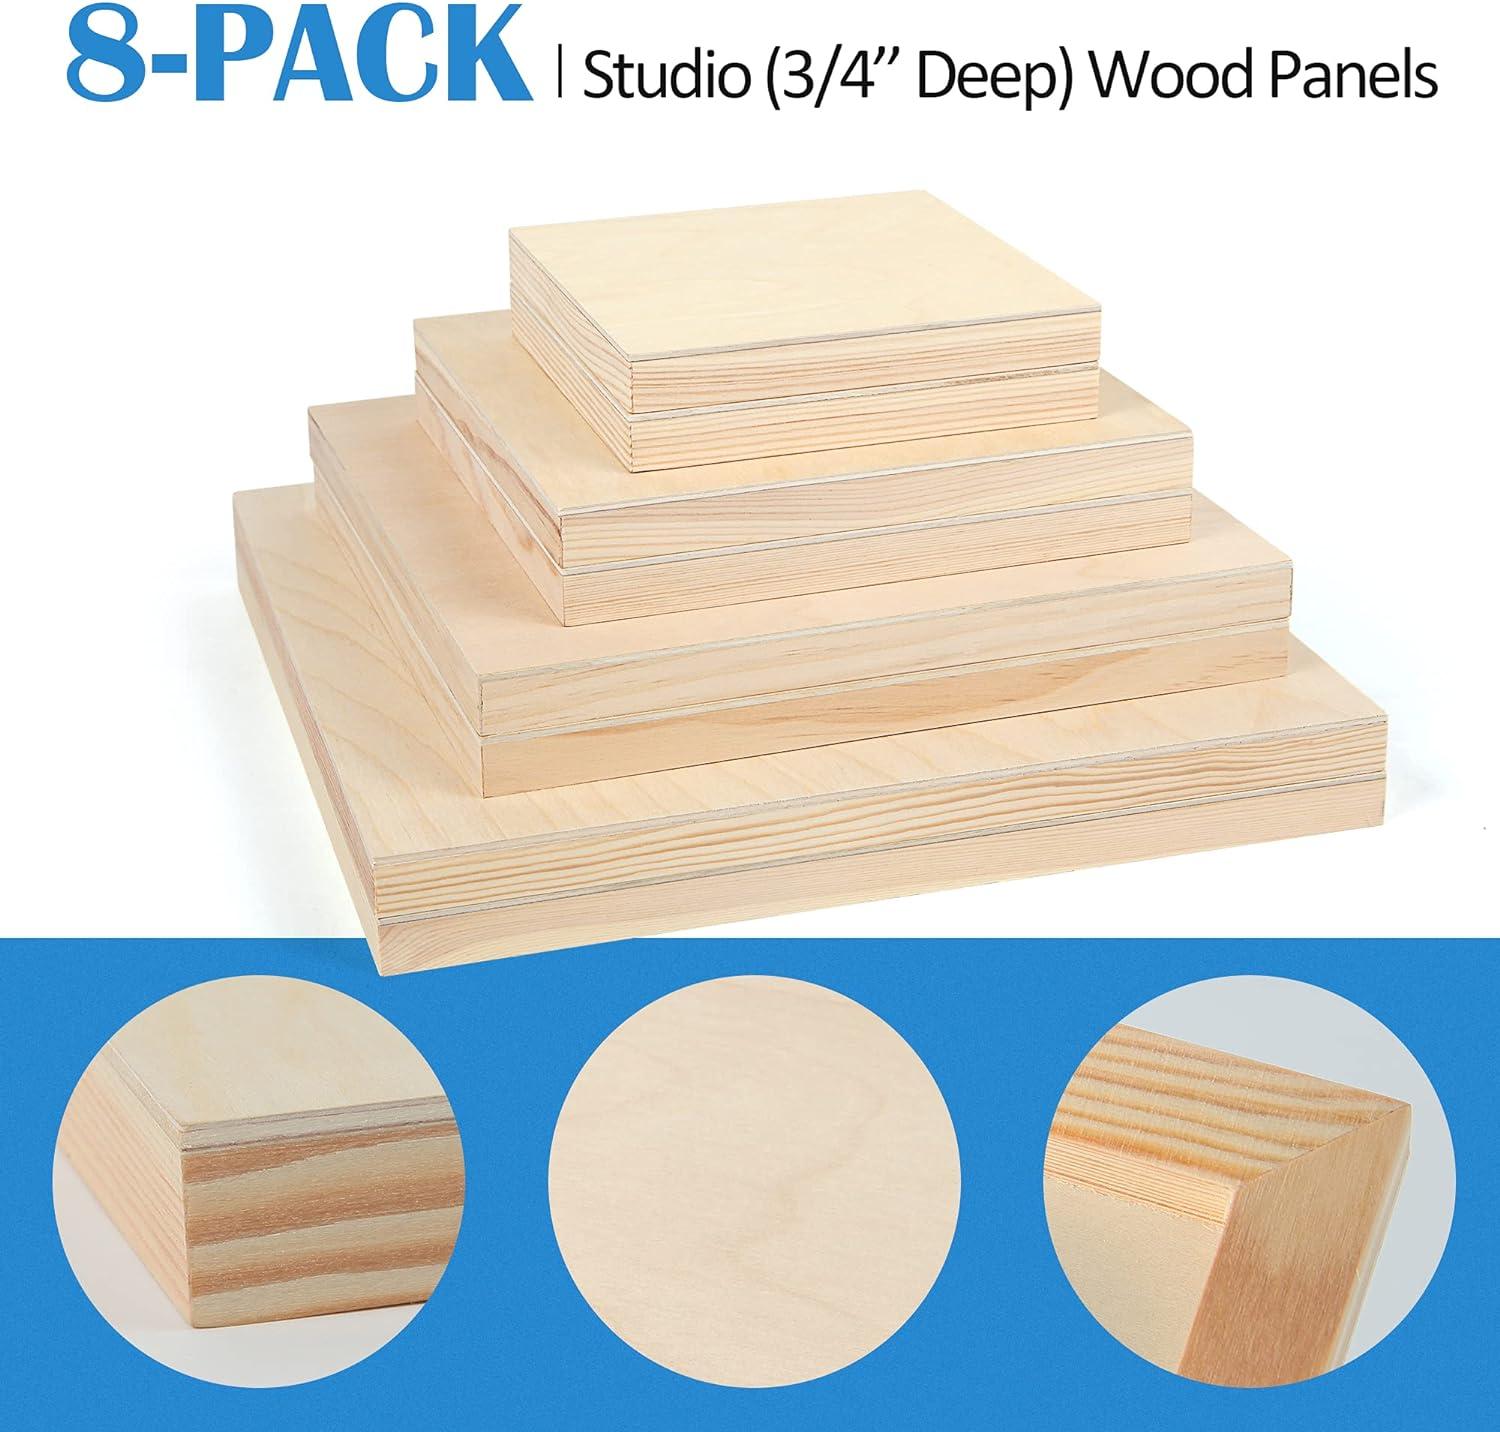 6 X 12 Birch Wood Panel Boards, Studio 3/4 Deep Cradle 4 Pack